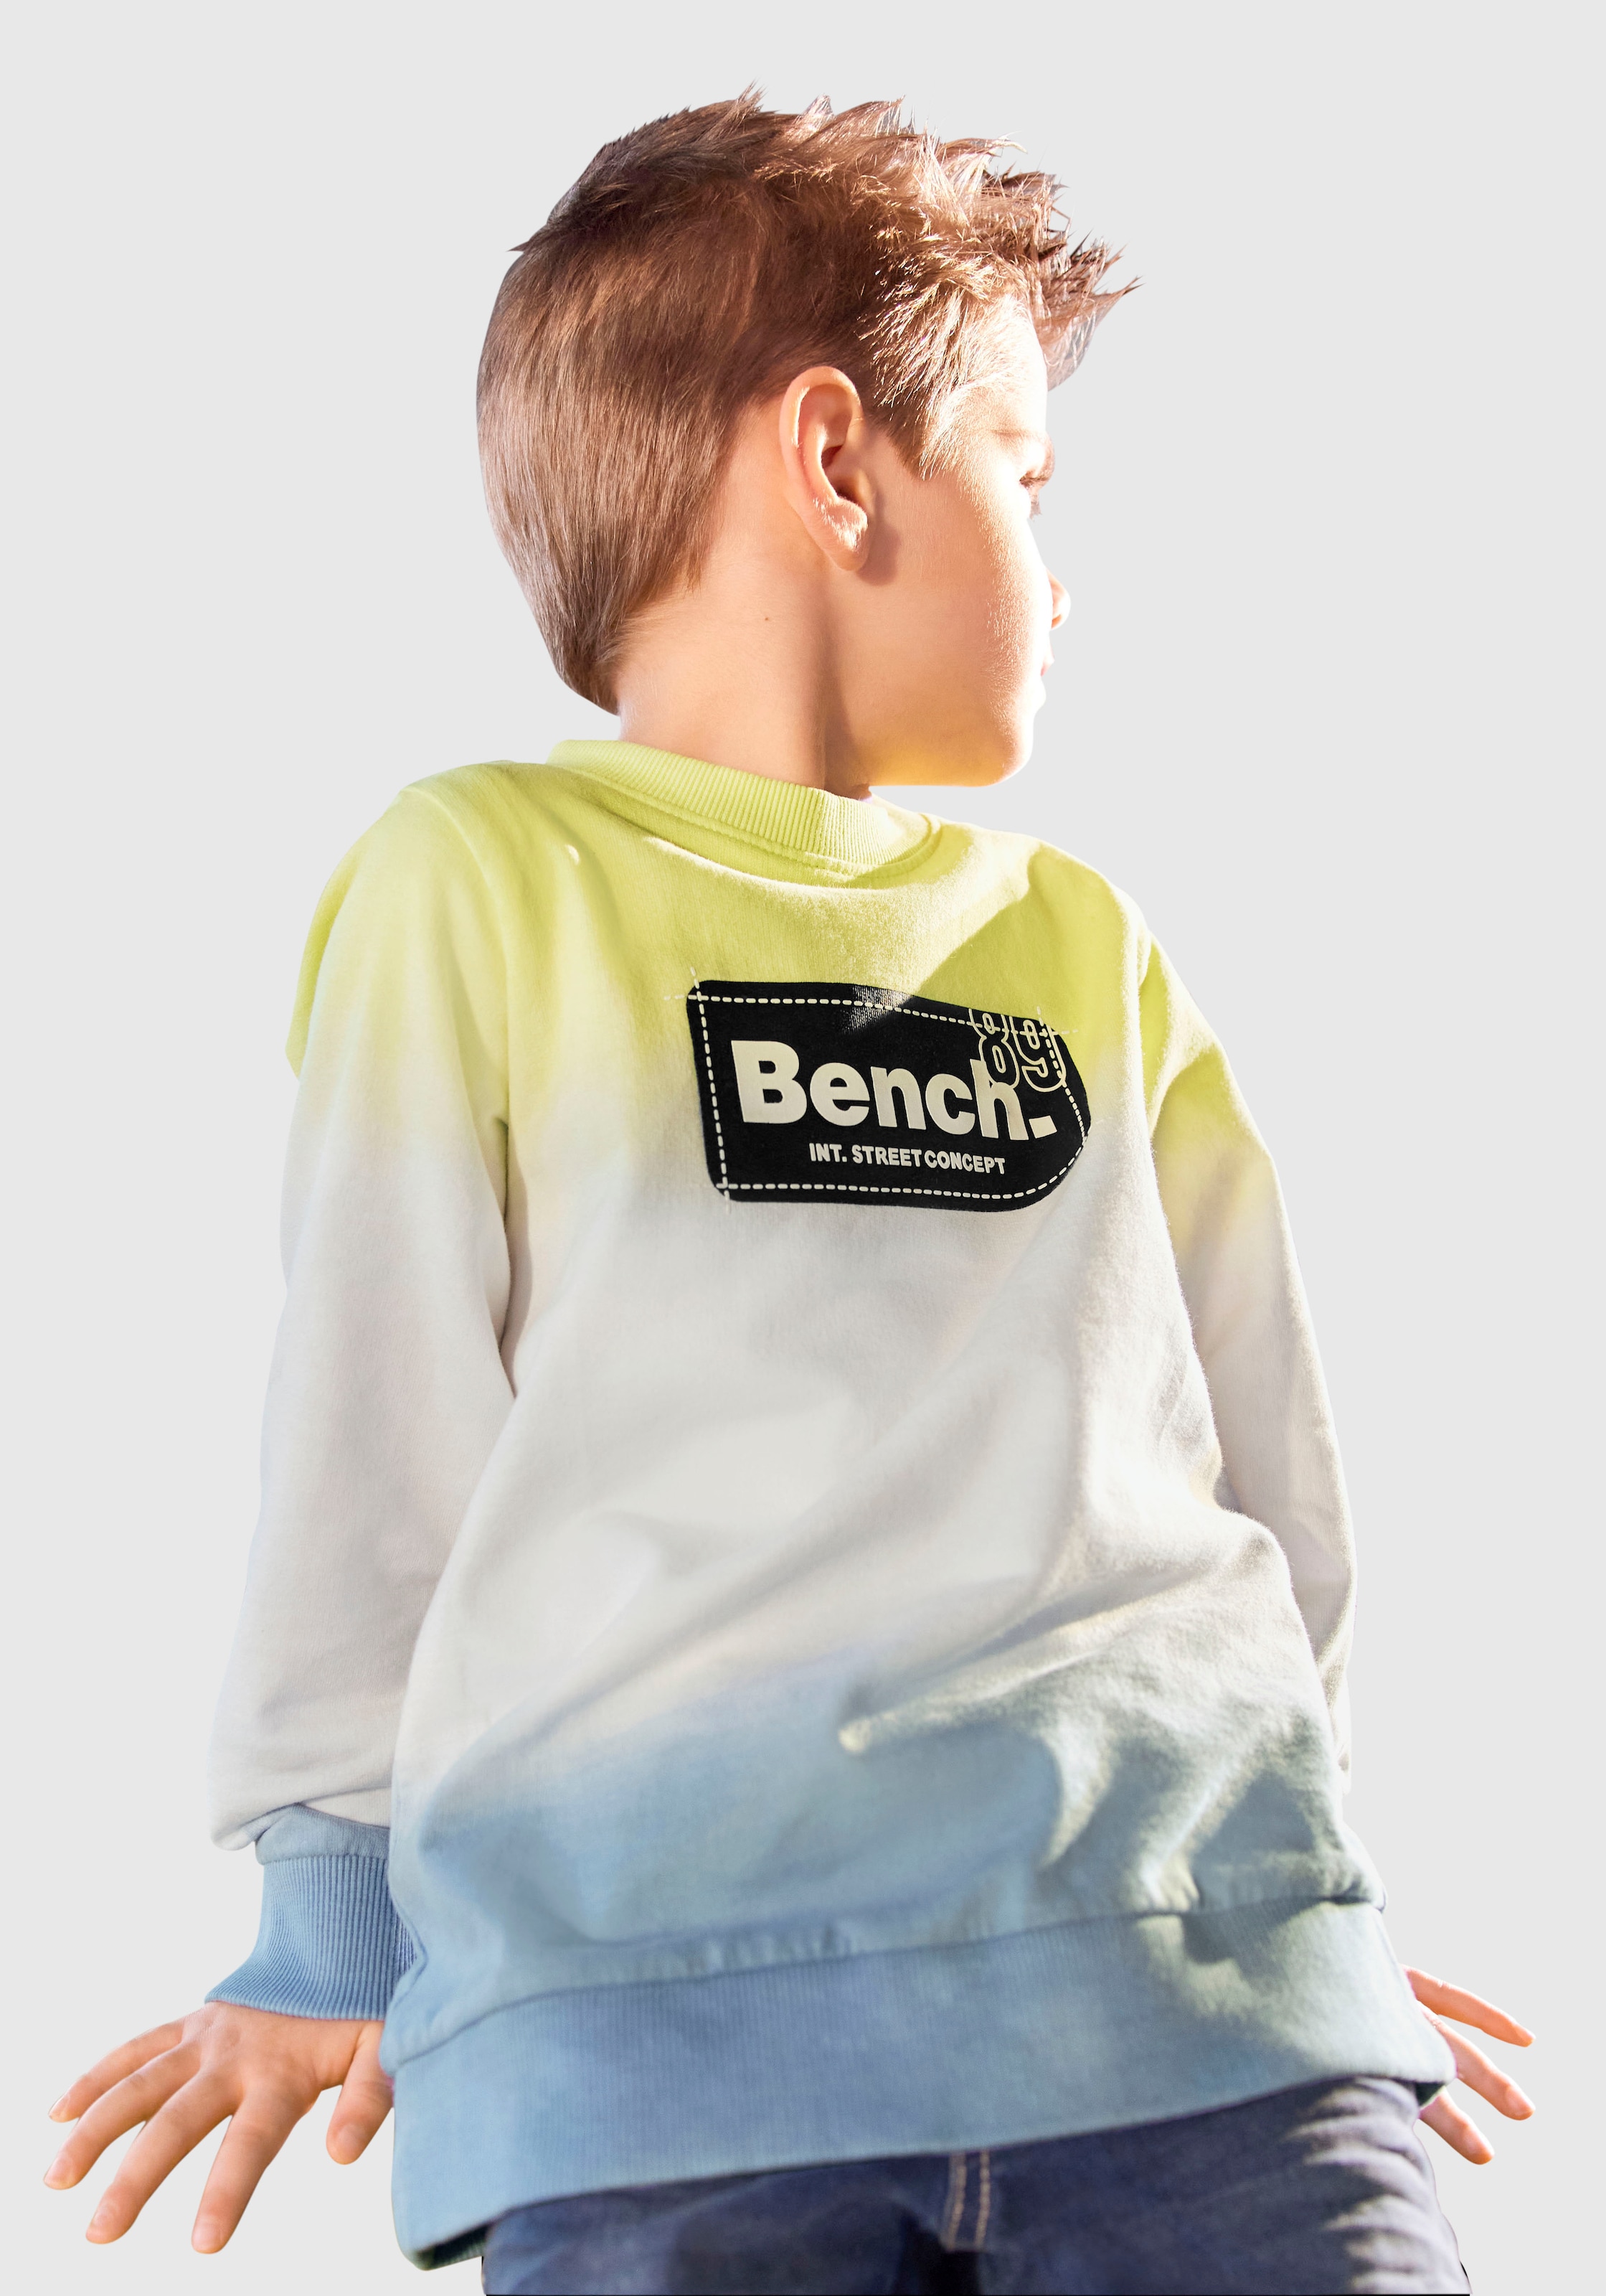 »mit ligne Acheter Bench. en Sweatshirt Farbverlauf« ✌